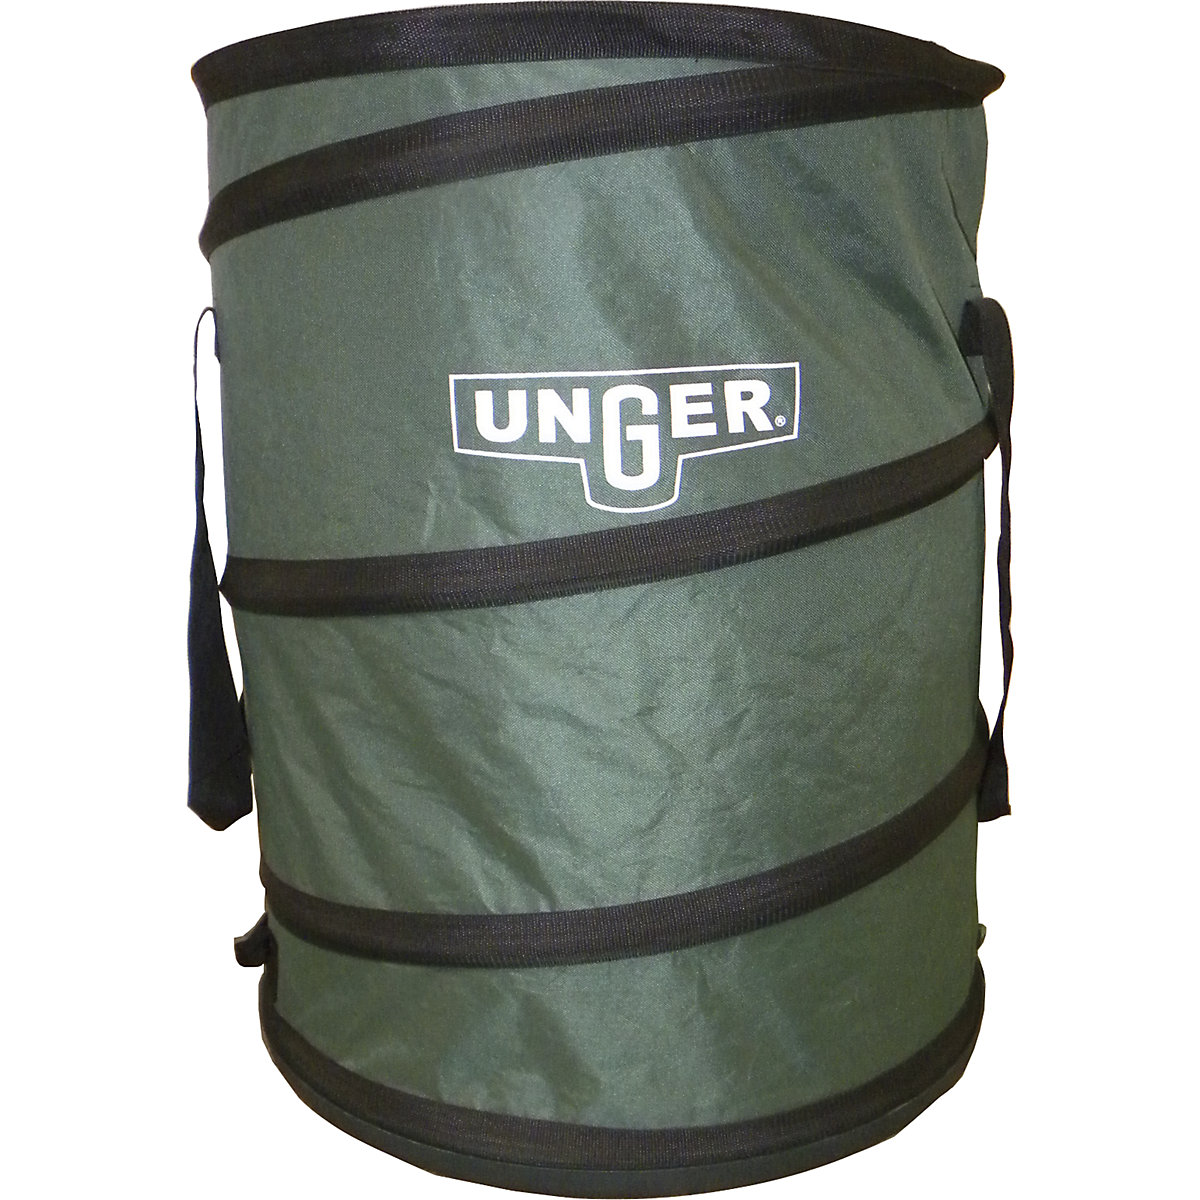 Unger – Pop-up garden sack